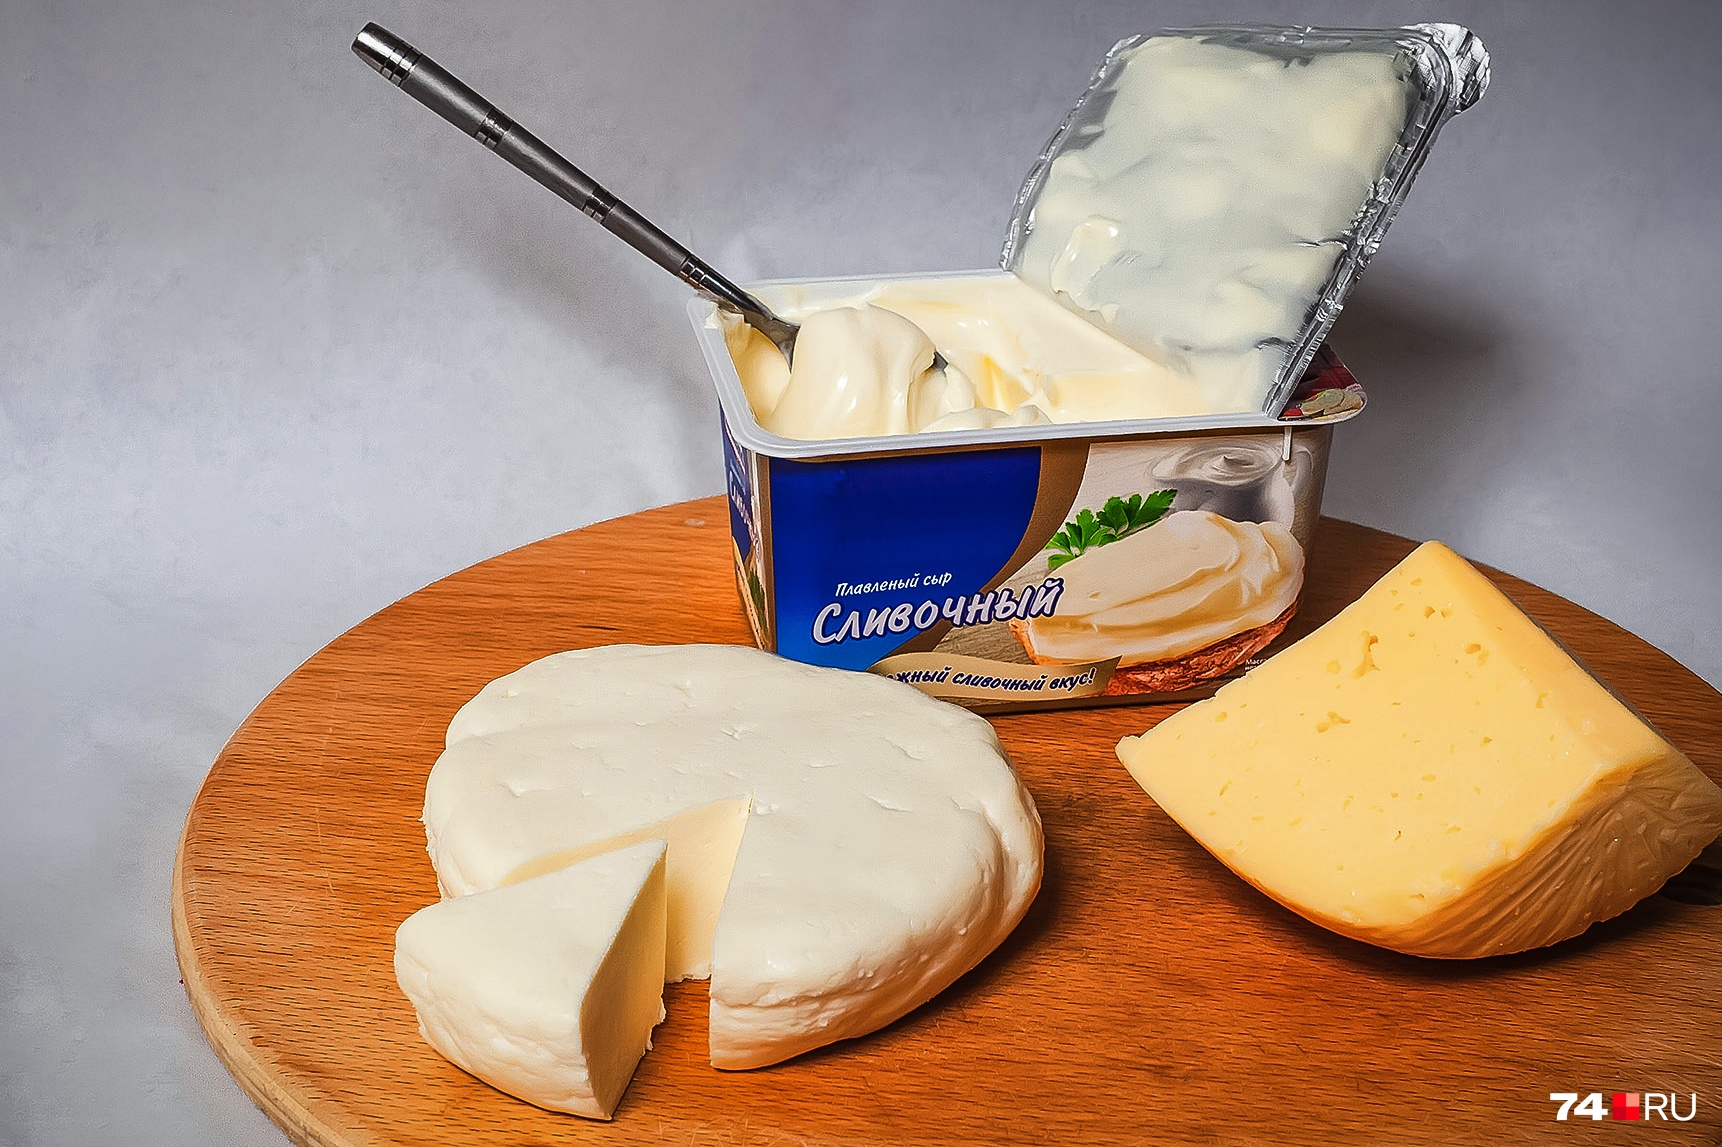 Плавленый сыр не приносит пользы, но и не навредит, если вы изредка будете им завтракать